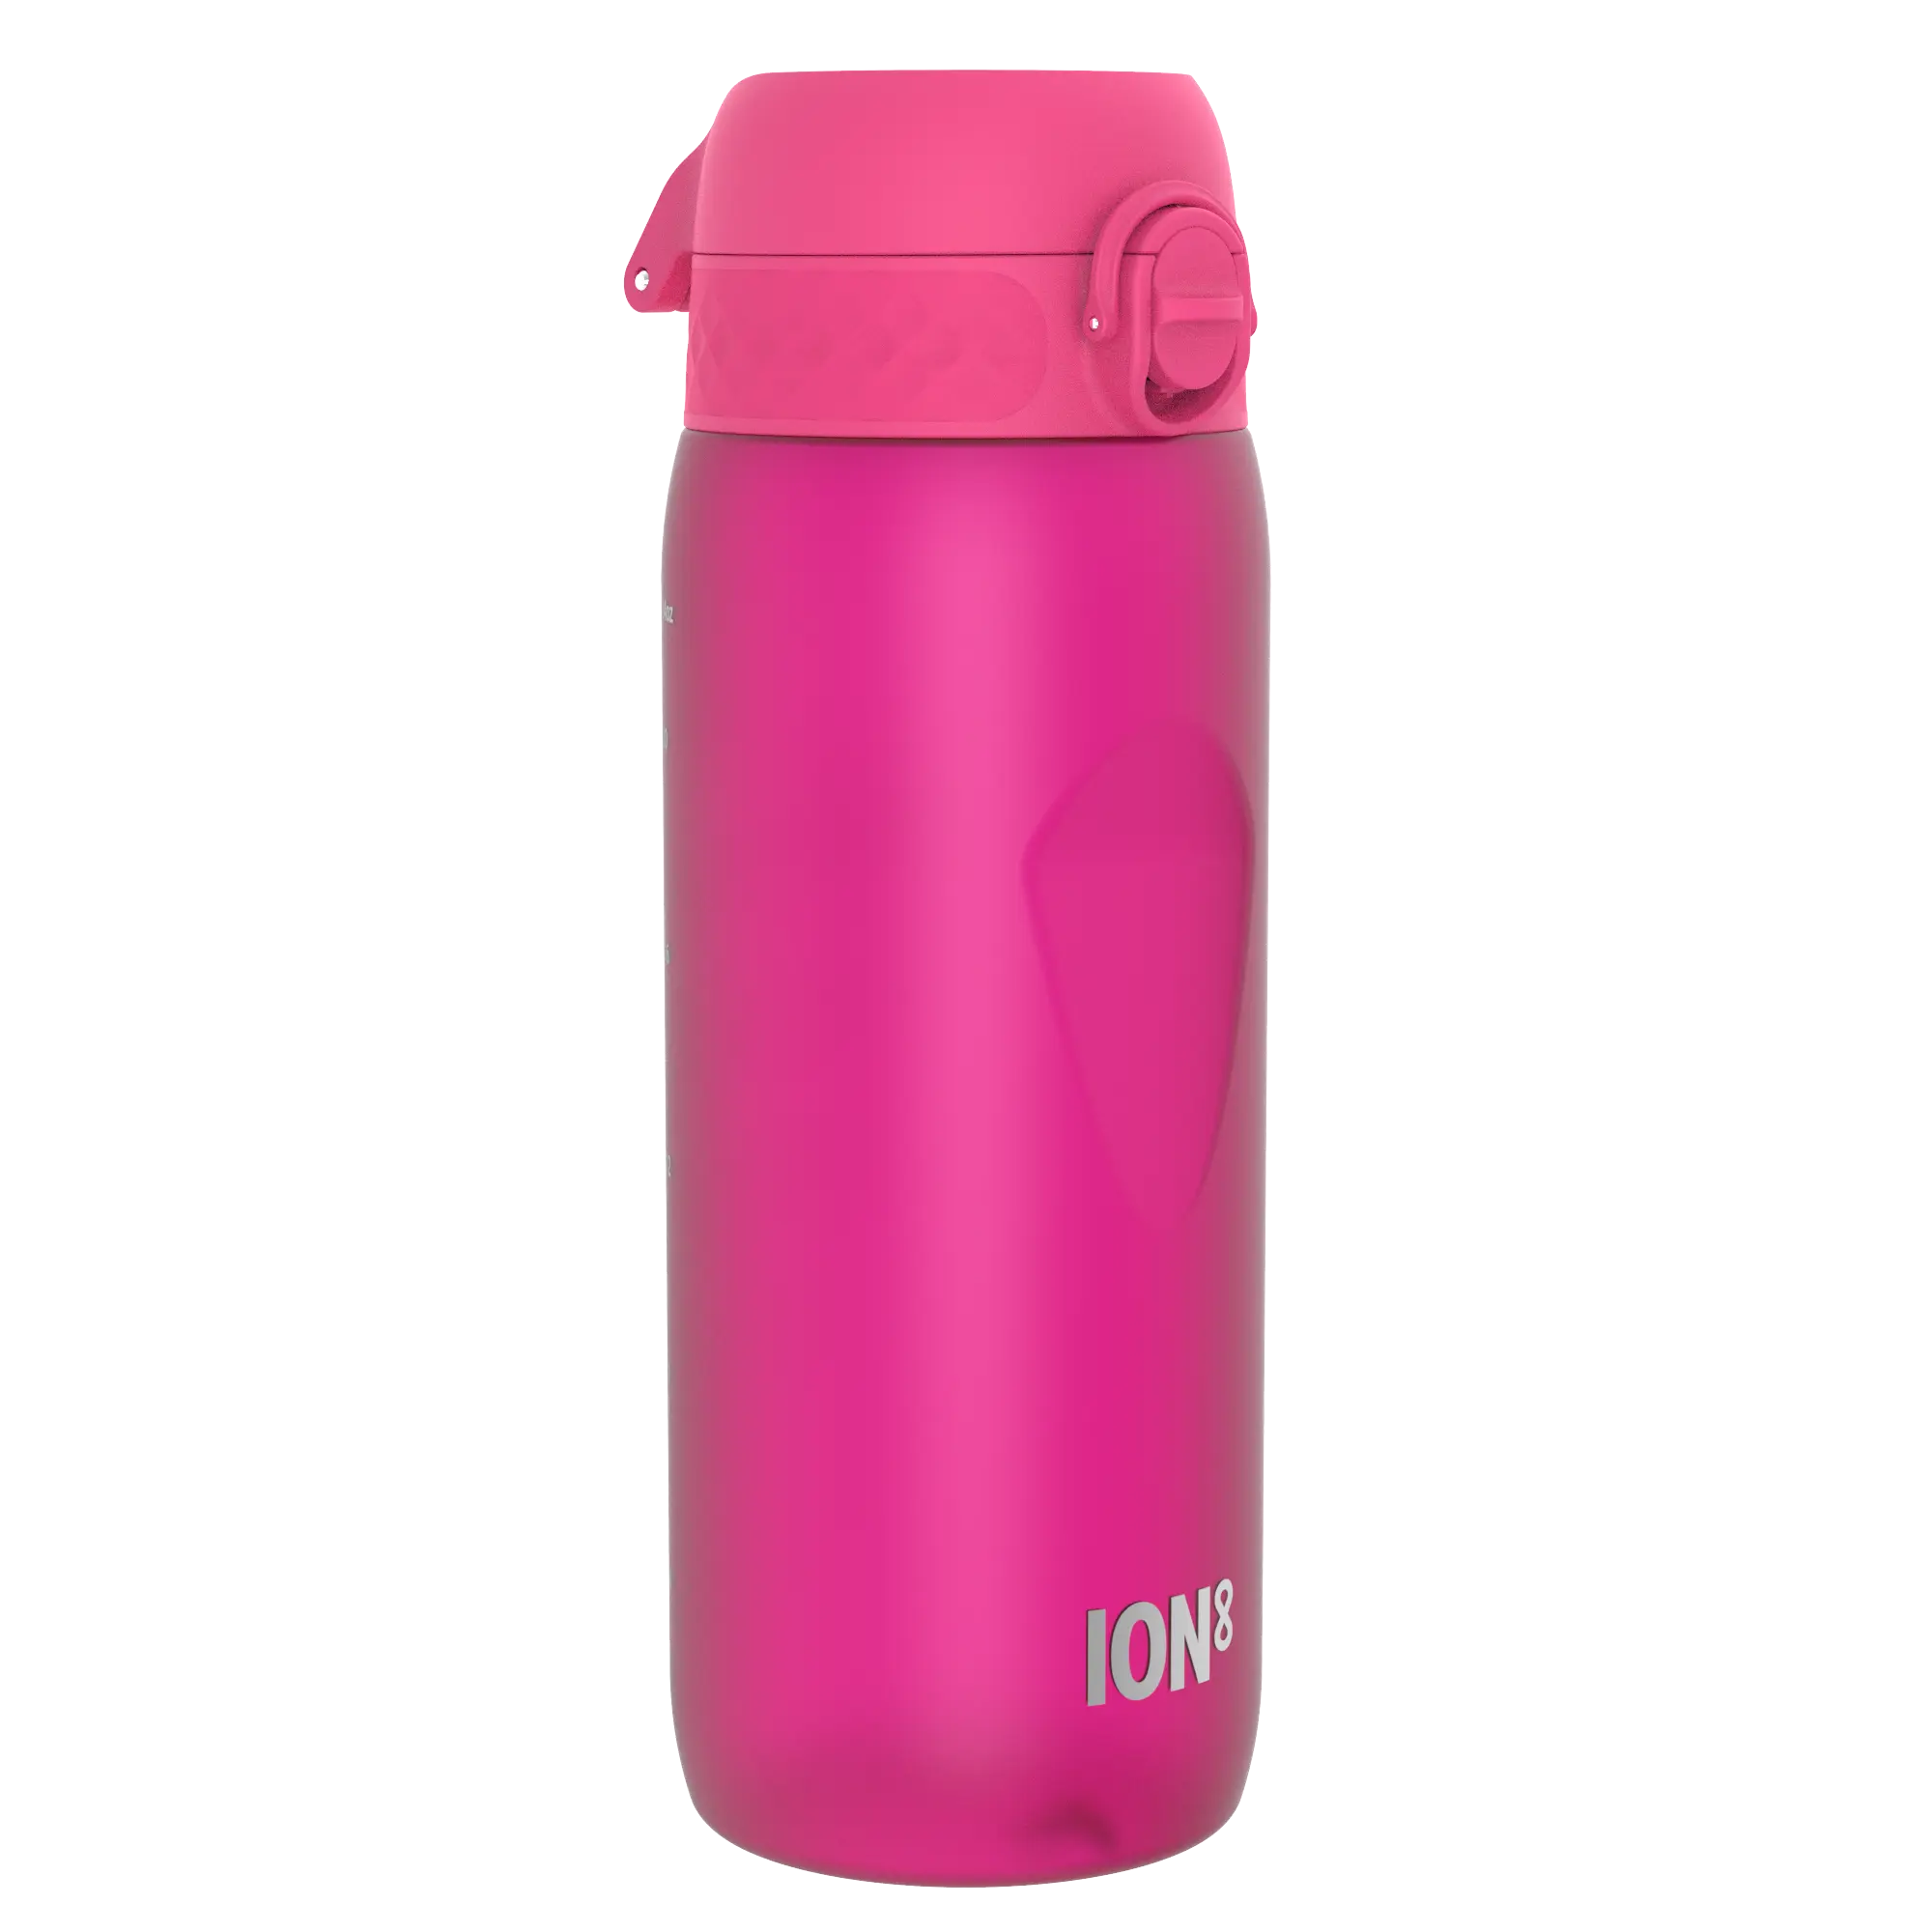 Butelka ION8 BPA Free I8RF750PIN Pink